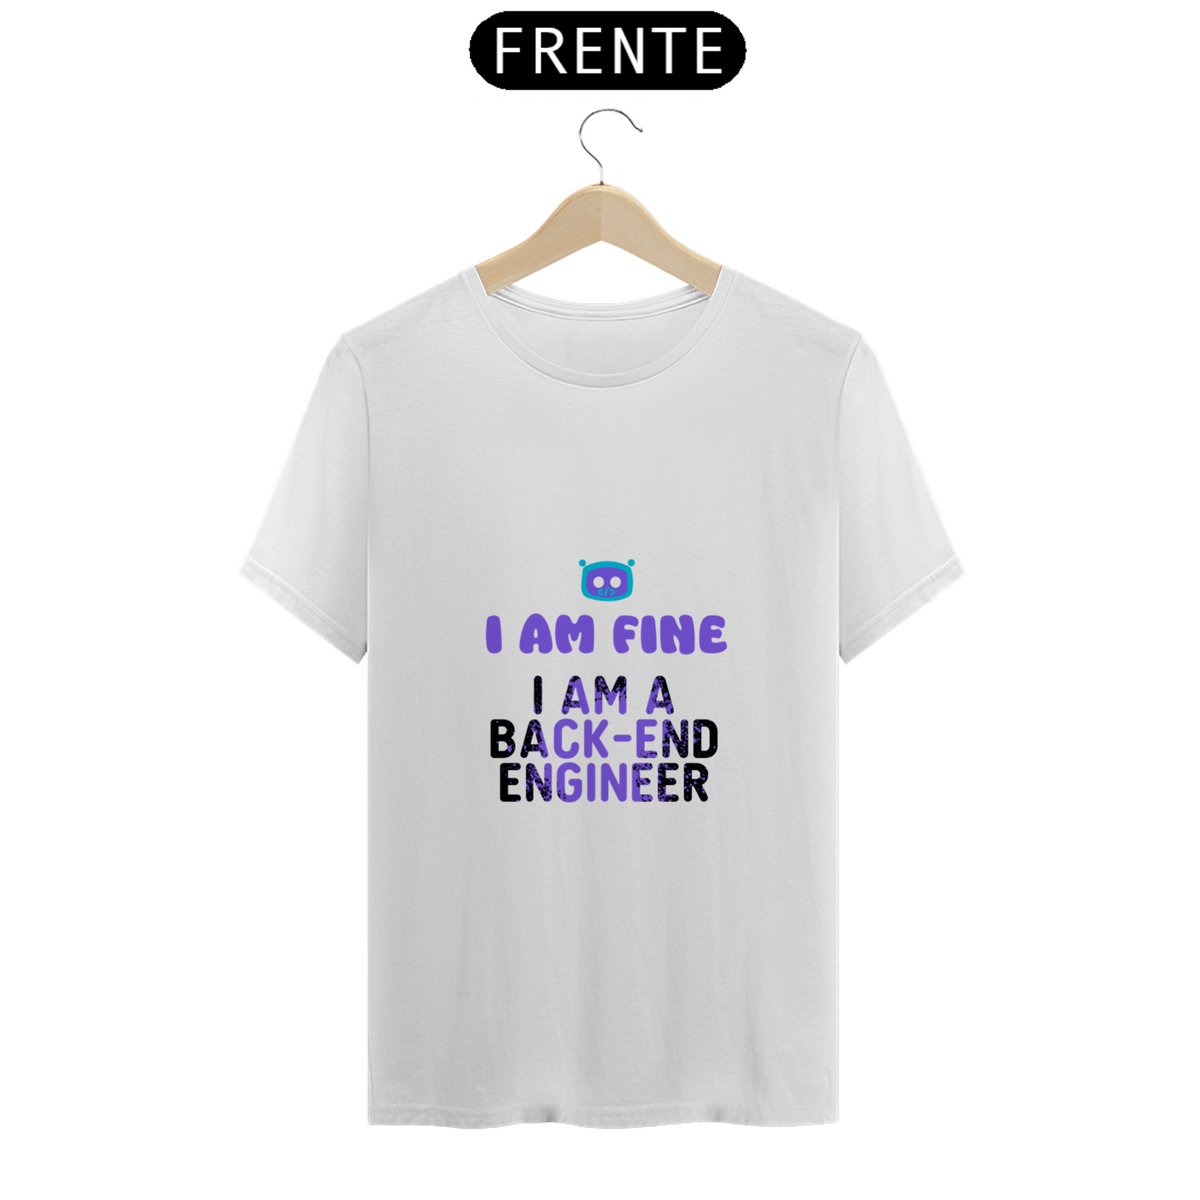 Nome do produto: Camiseta I am fine - Back-end